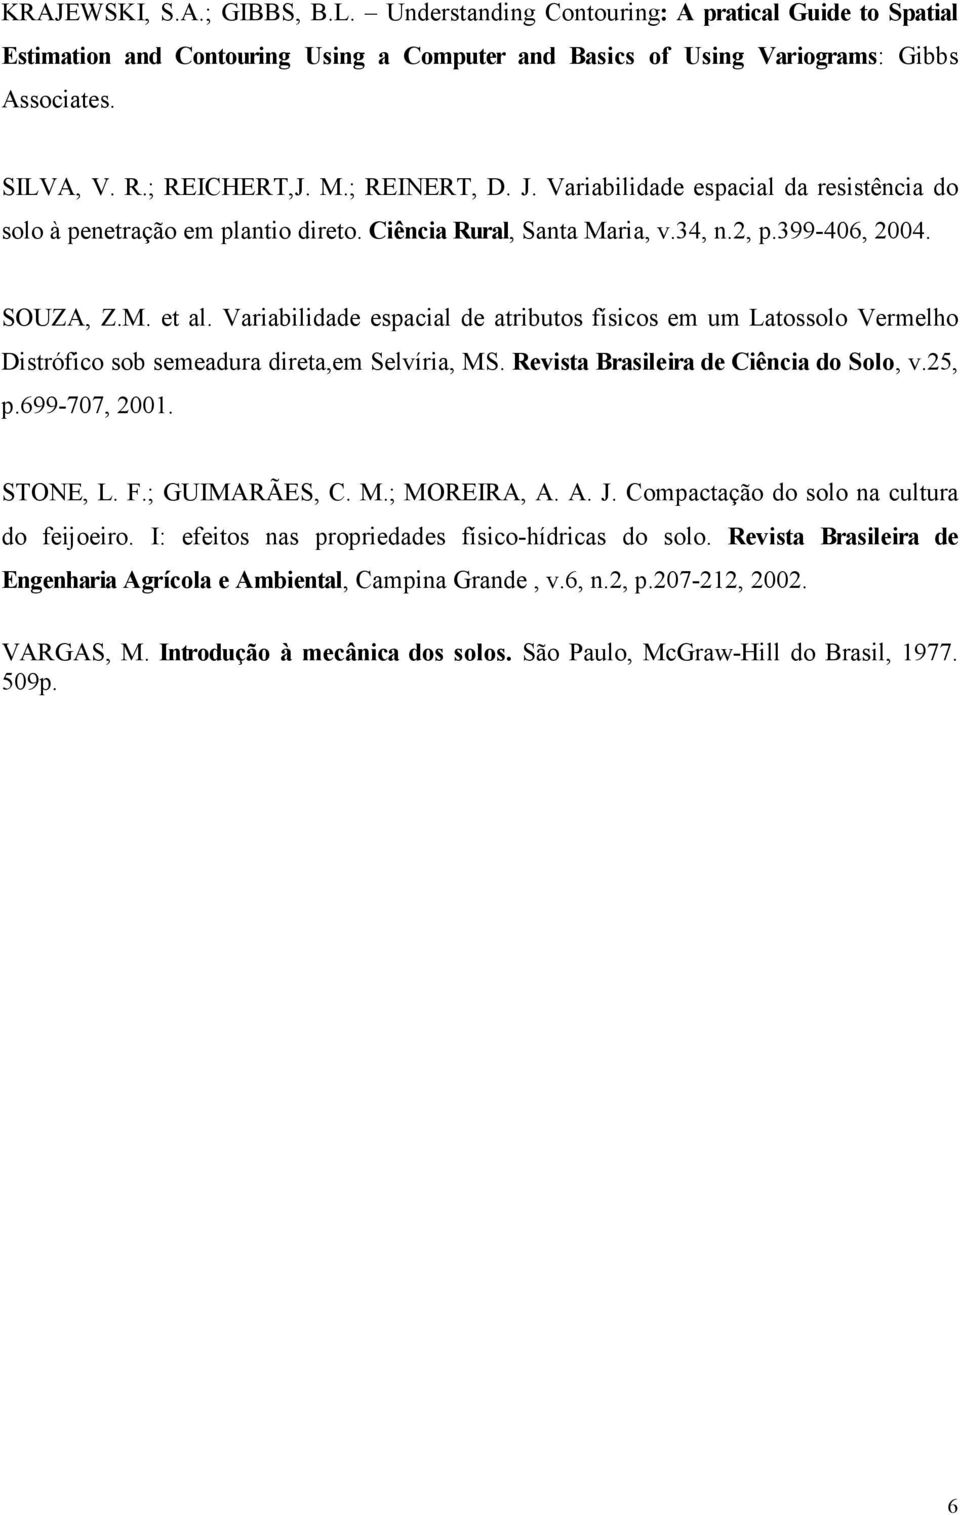 Variabilidade espacial de atributos físicos em um Latossolo Vermelho Distrófico sob semeadura direta,em Selvíria, MS. Revista Brasileira de Ciência do Solo, v.25, p.699-707, 2001. STONE, L. F.